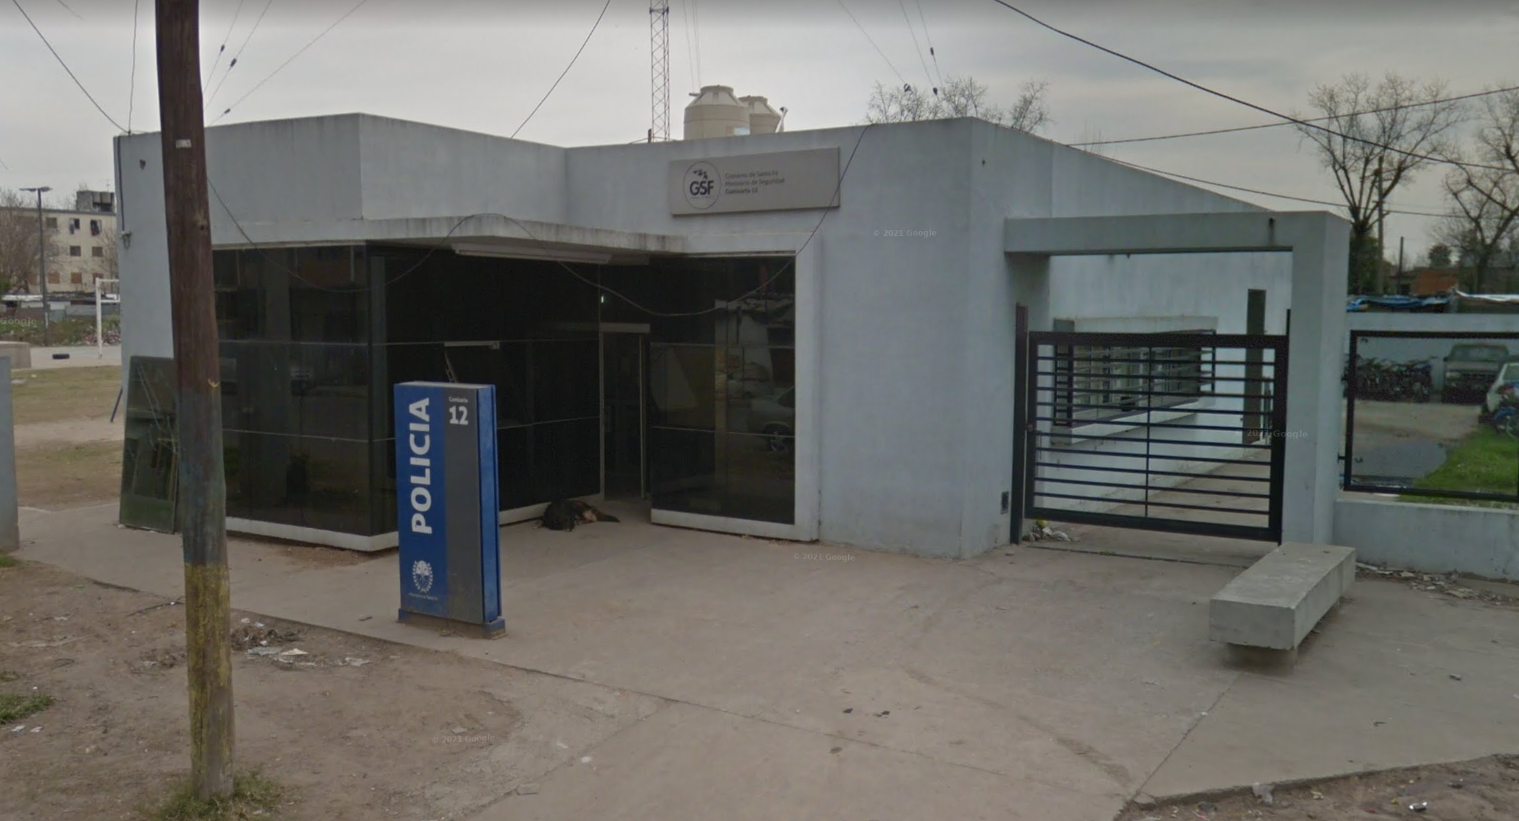 Escándalo en Rosario: detuvieron a un subcomisario con dos autos robados y uno tenía la patente de un patrullero